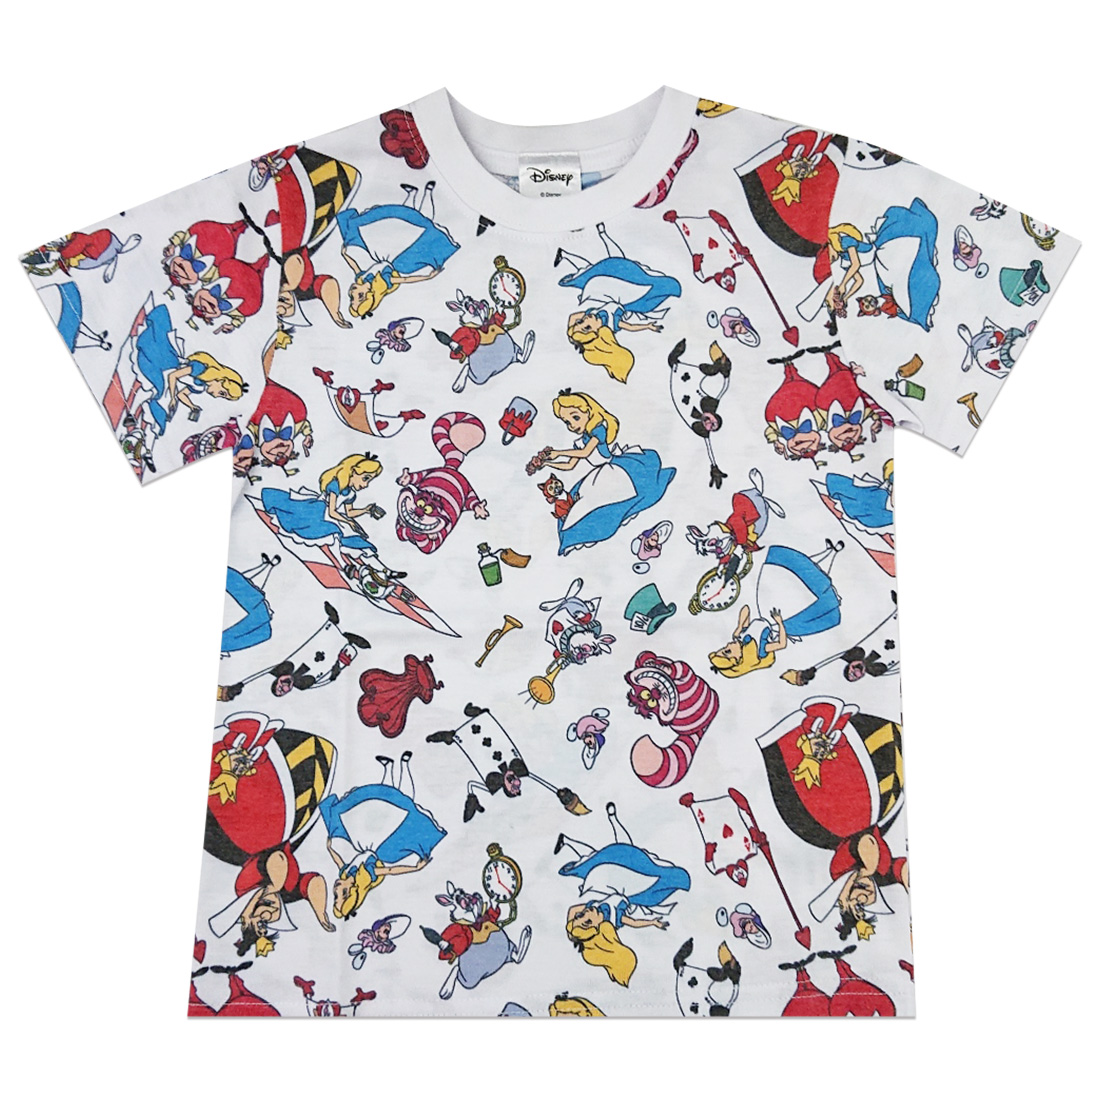 楽天市場 Disney ディズニー くまのプーさん ぎっしり 総柄 Tシャツ キッズ Kiitos 楽天市場店